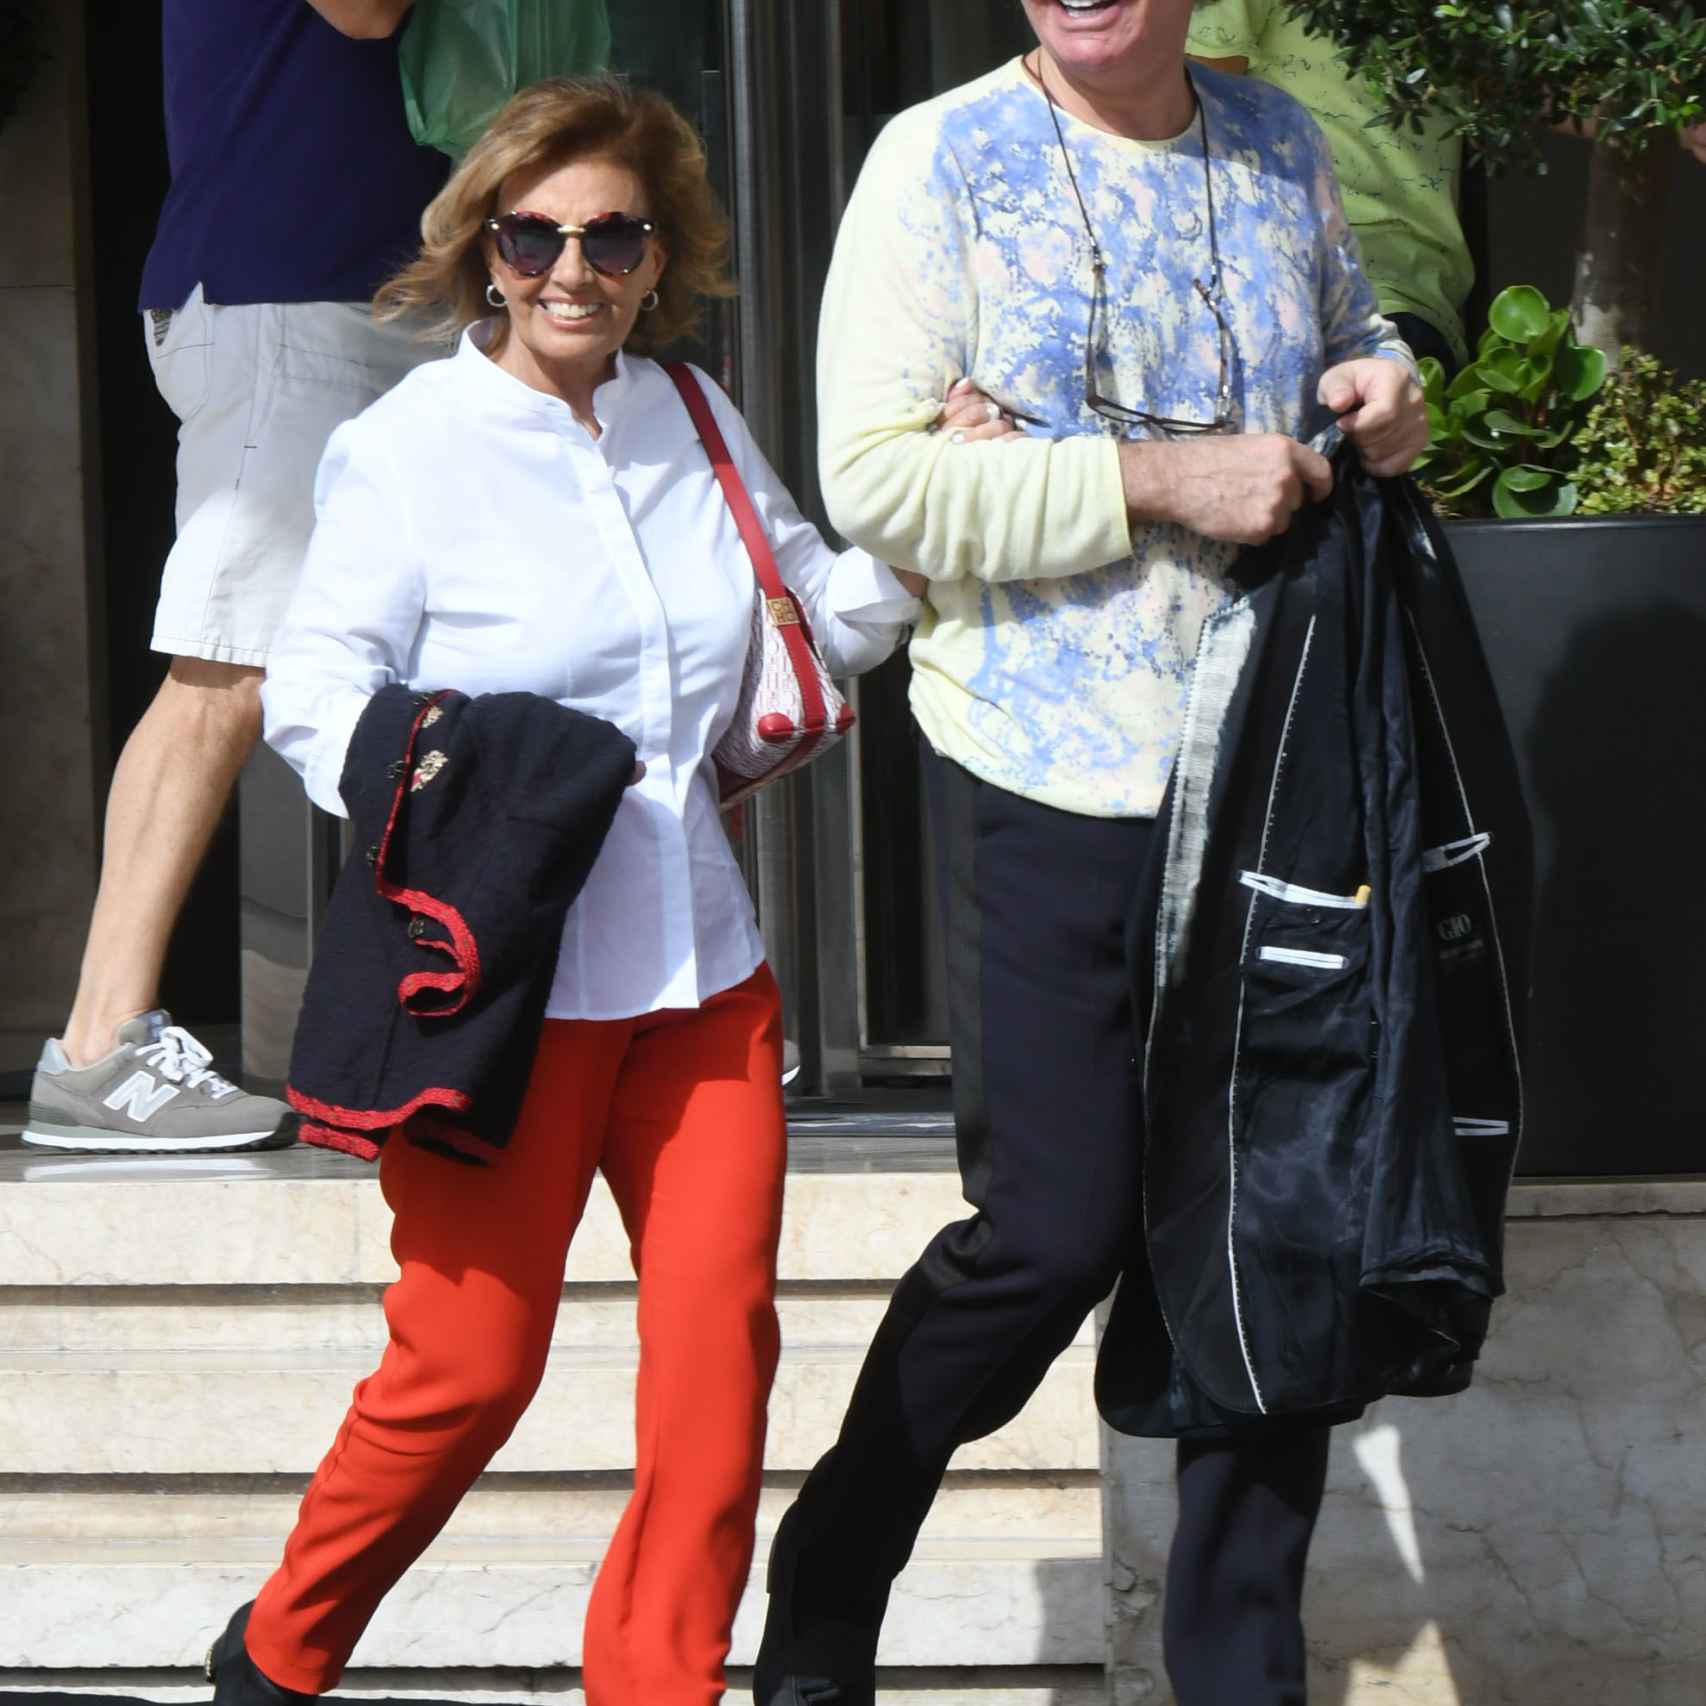 María Teresa y Bigote pasean del brazo por las calles de Marbella hace 10 días, poco después de las polémicas imágenes con otra mujer.